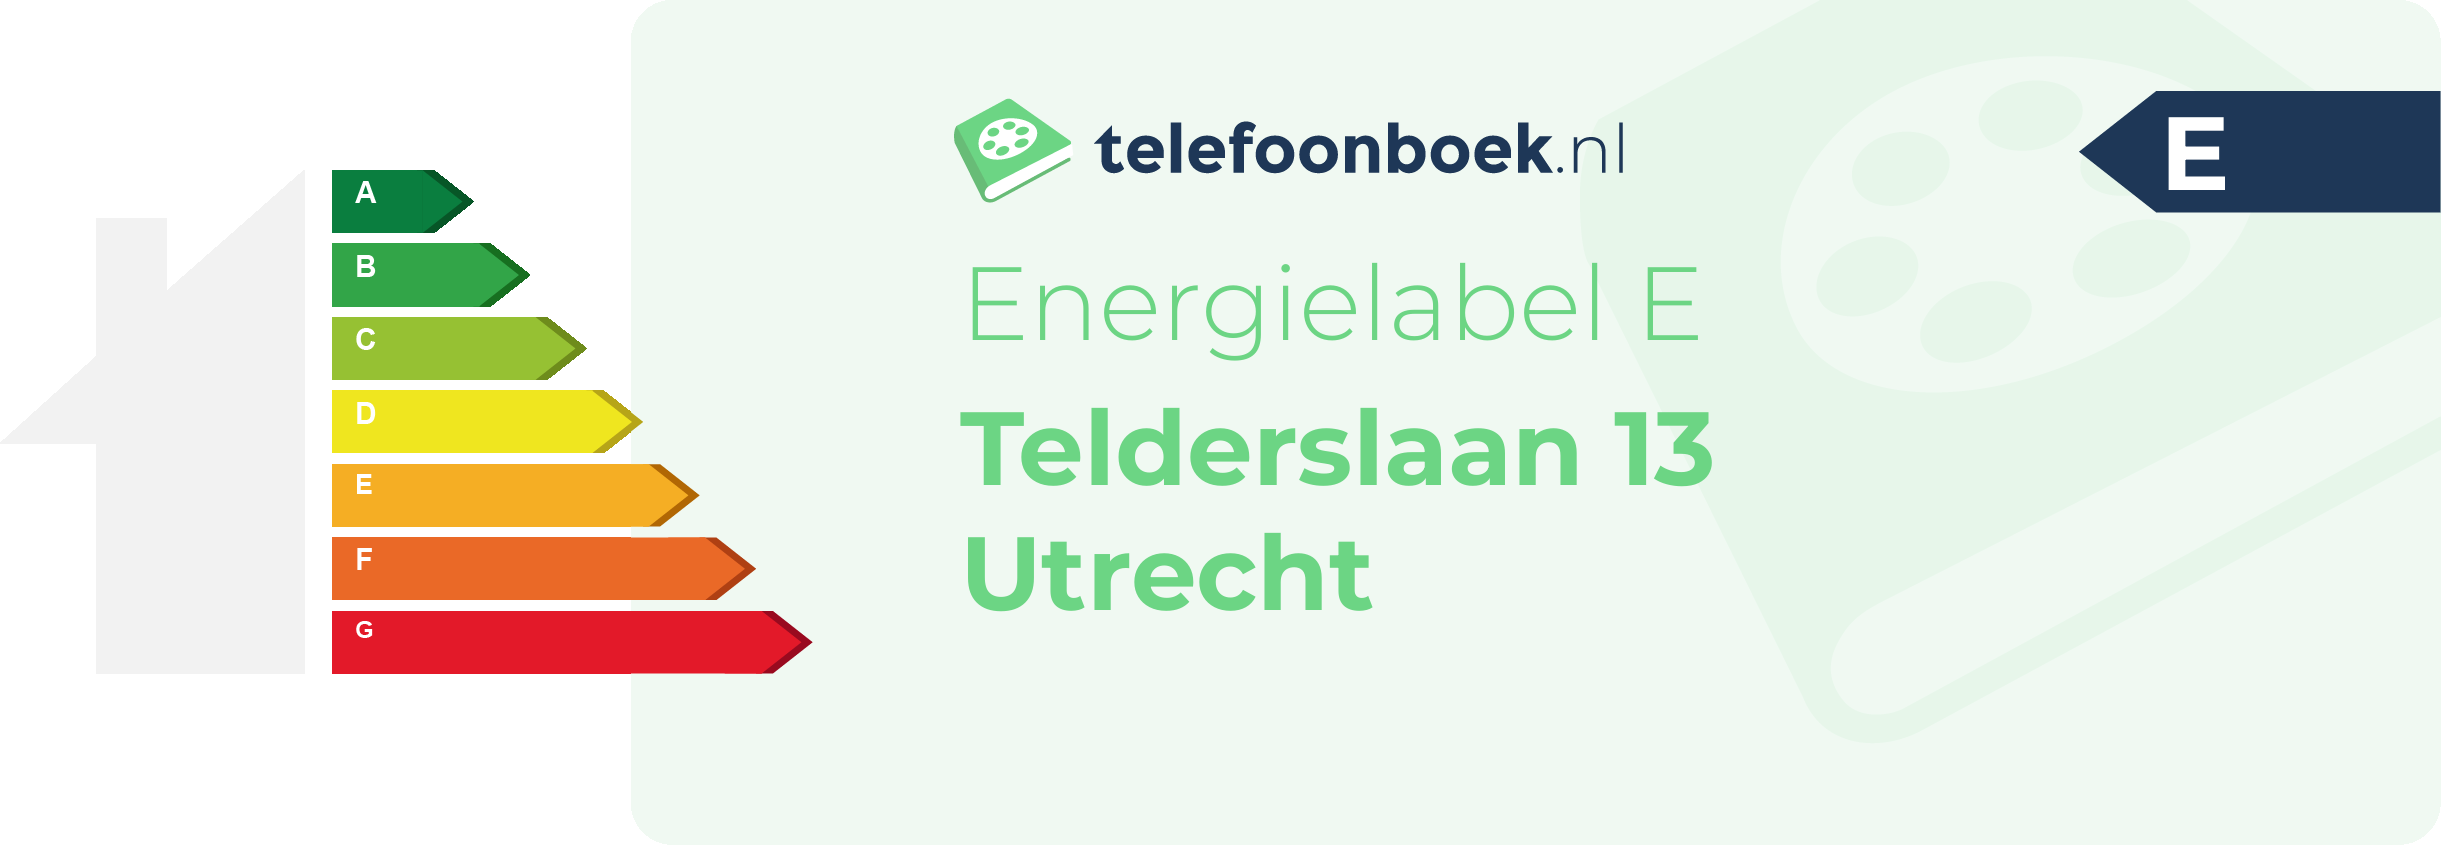 Energielabel Telderslaan 13 Utrecht